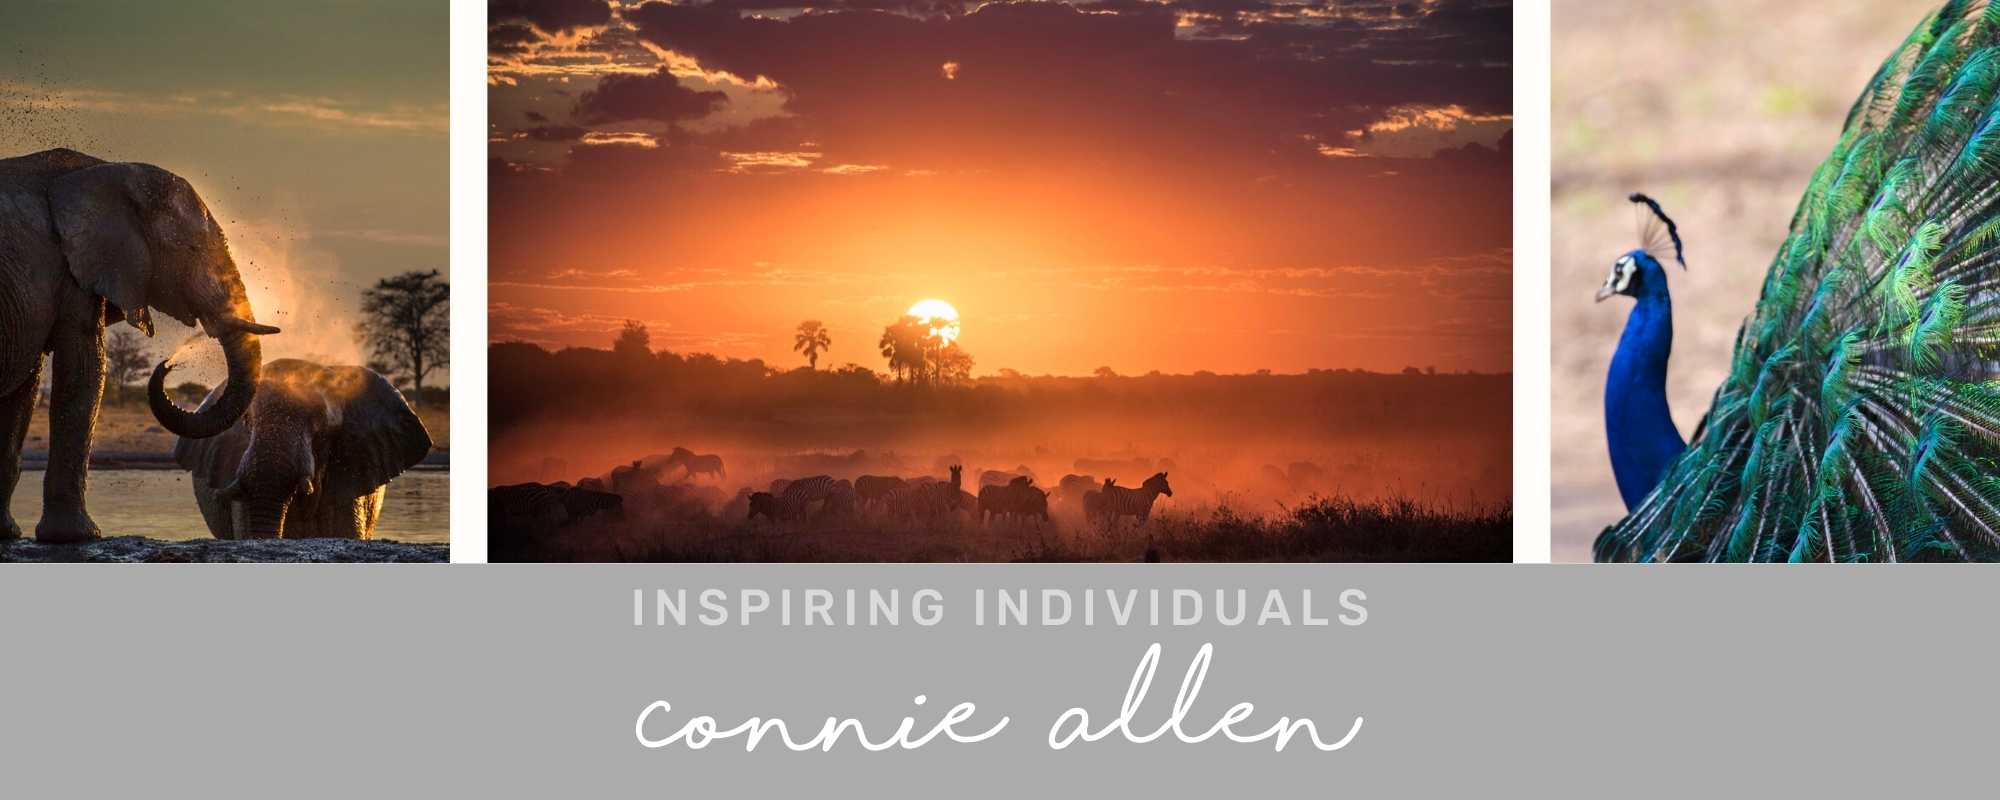 INSPIRING INDIVIDUALS: Connie Allen